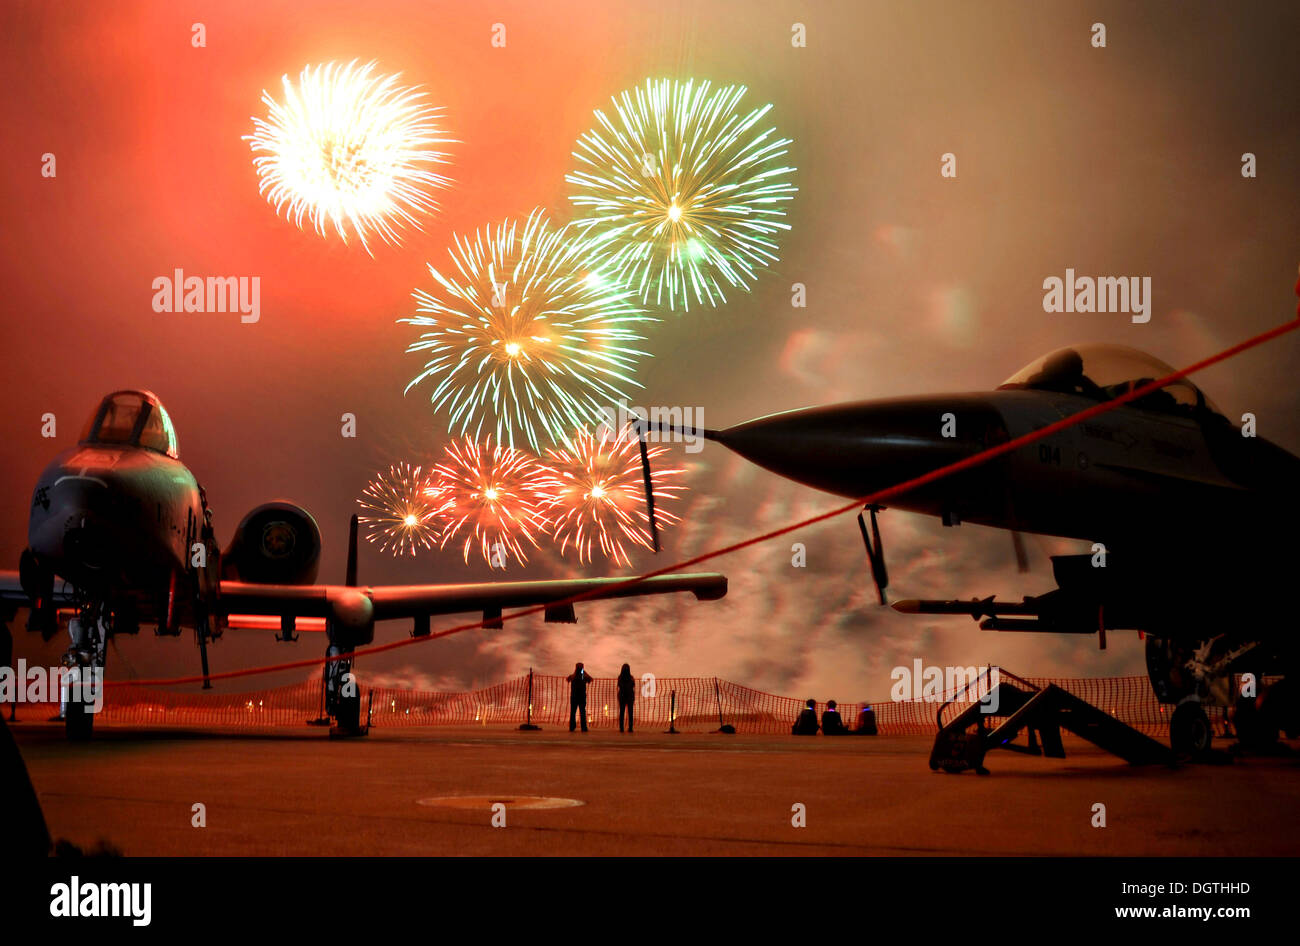 Feux d'artifice explosent dans le ciel derrière un U.S. Air Force A-10 Thunderbolt II et un F-16 Fighting Falcon aéronefs pendant le Festival de la liberté de célébrer le Jour de l'indépendance de l'Amérique le 4 juillet 2013, à la base aérienne Osan, en Corée du Sud. Banque D'Images